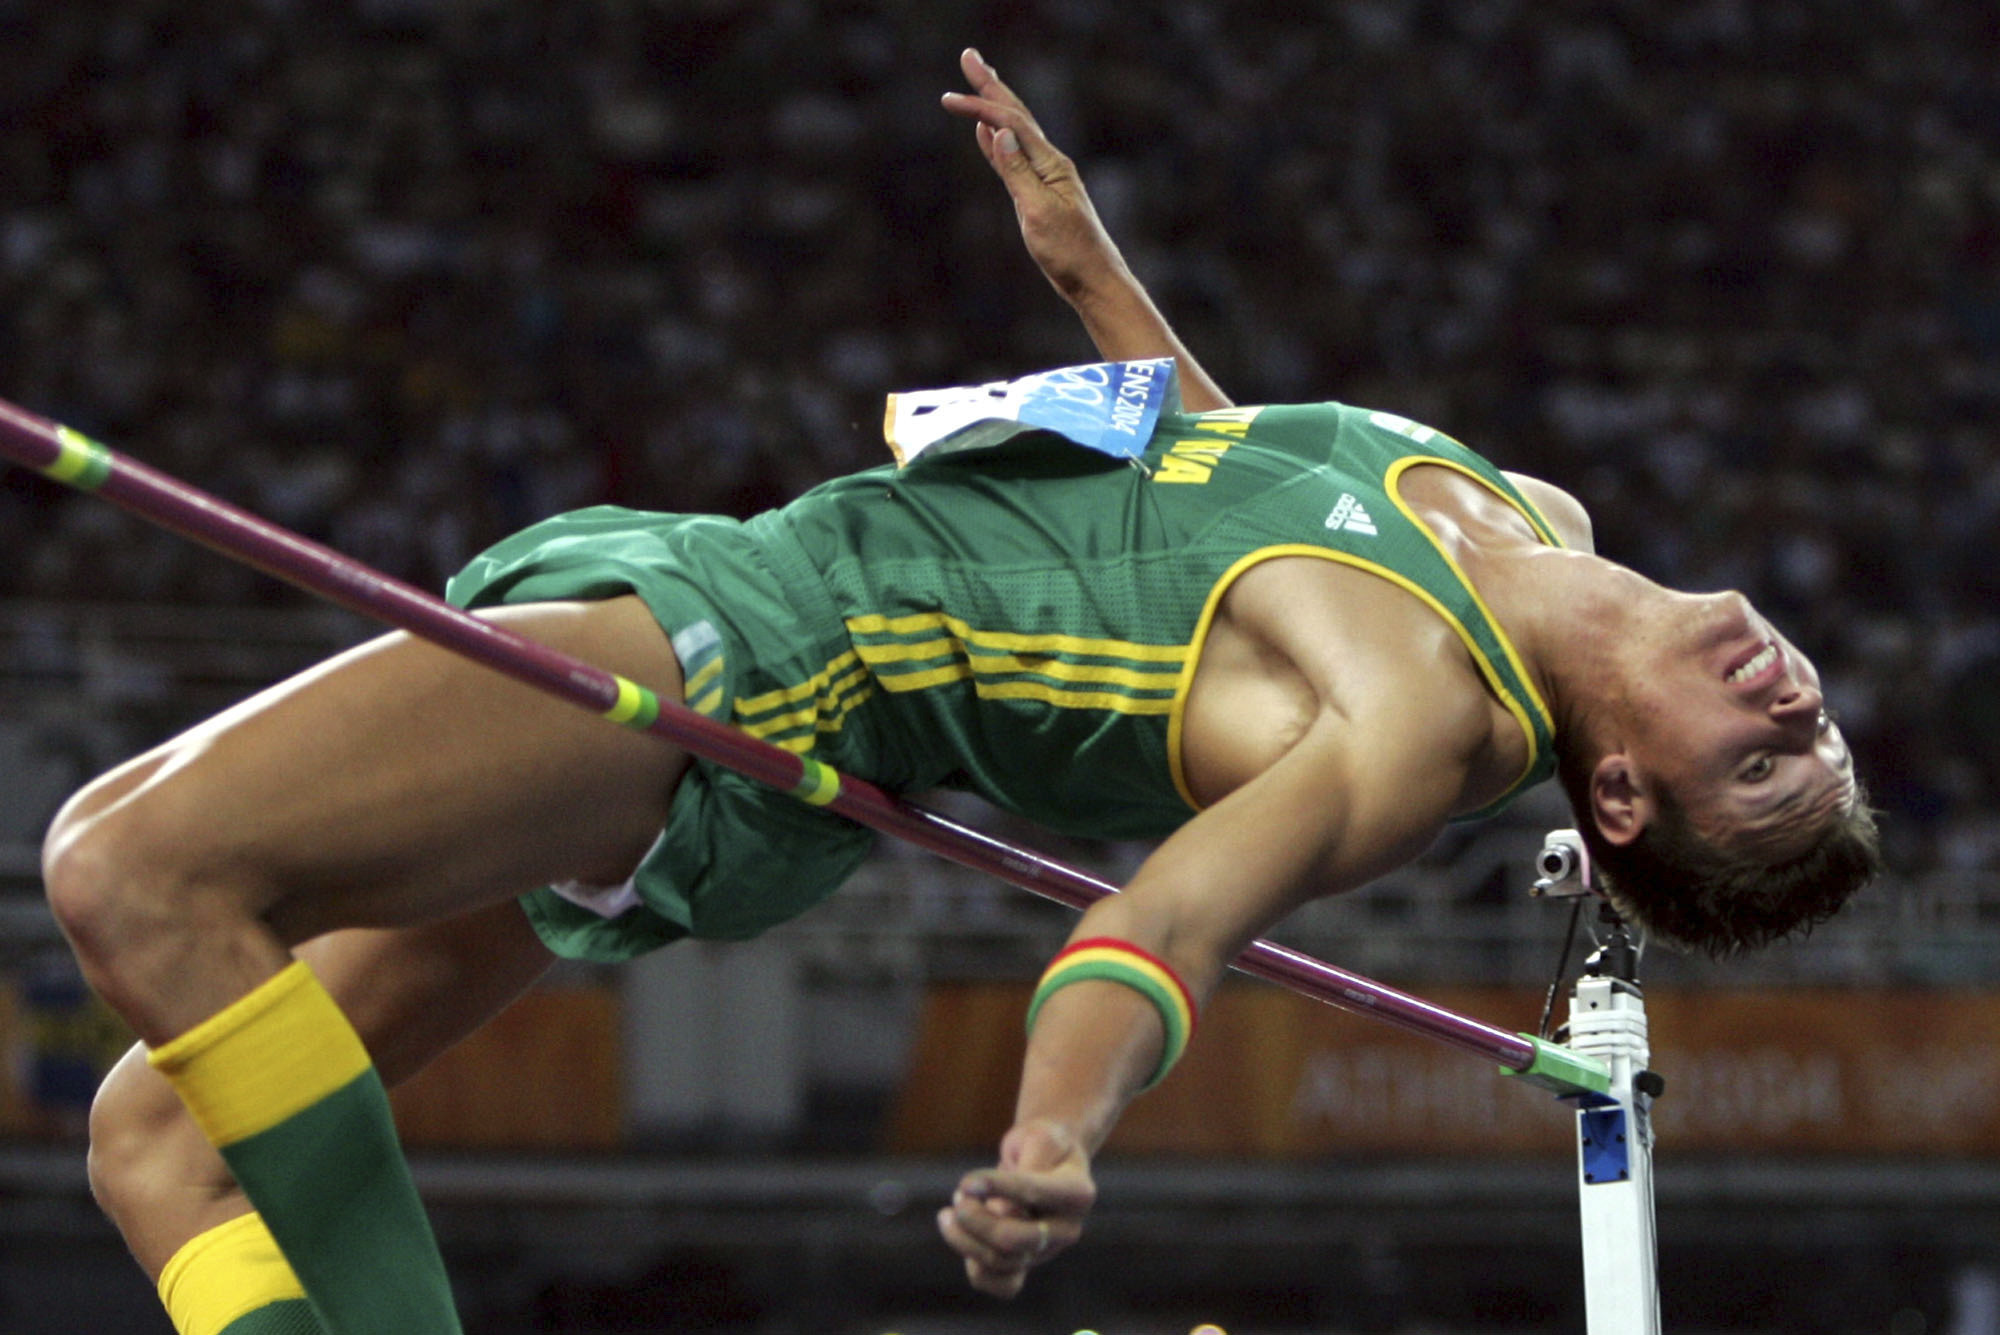 El sudafricano Jacques Freitag compite en la prueba masculina de salto de altura de los Juegos Olímpicos de 2004, en el Estadio Olímpico de Atenas, el viernes 20 de agosto de 2004. Los medios de comunicación locales informan de que la policía sudafricana ha descubierto el cadáver del ex campeón mundial de salto de altura Jacques Freitag, desaparecido el mes pasado. Según los informes, el atleta de 42 años, que ganó el título mundial en 2003 en París y compitió en los Juegos Olímpicos de 2004, había sido tiroteado.